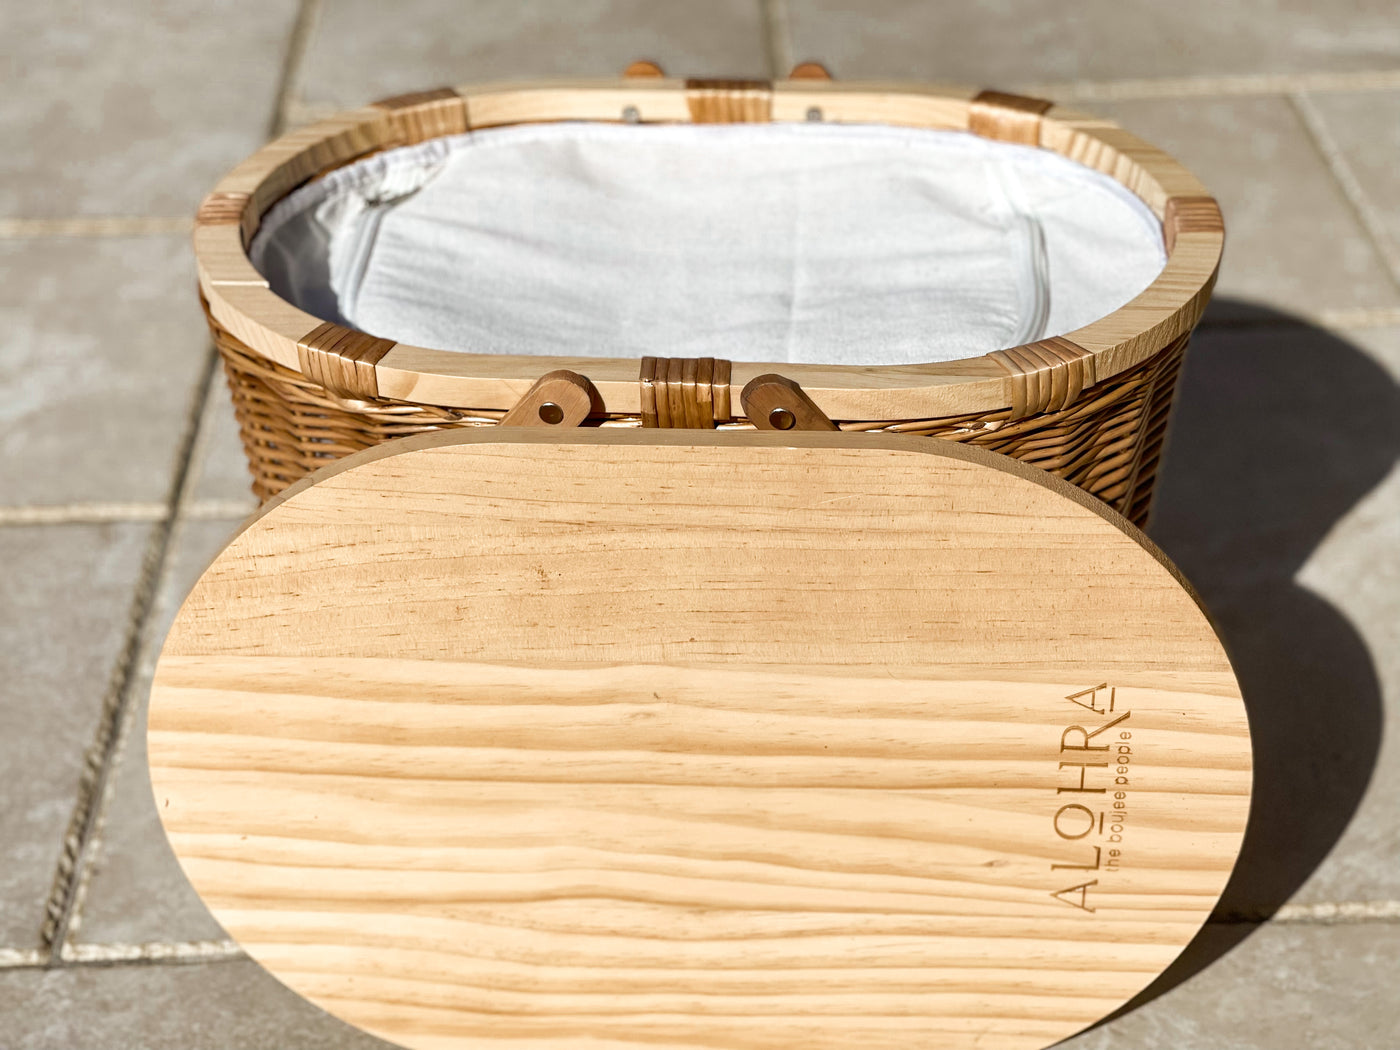 Hand Made Deluxe Oval Picnic Basket With Bonus 15pce Utensil Kit